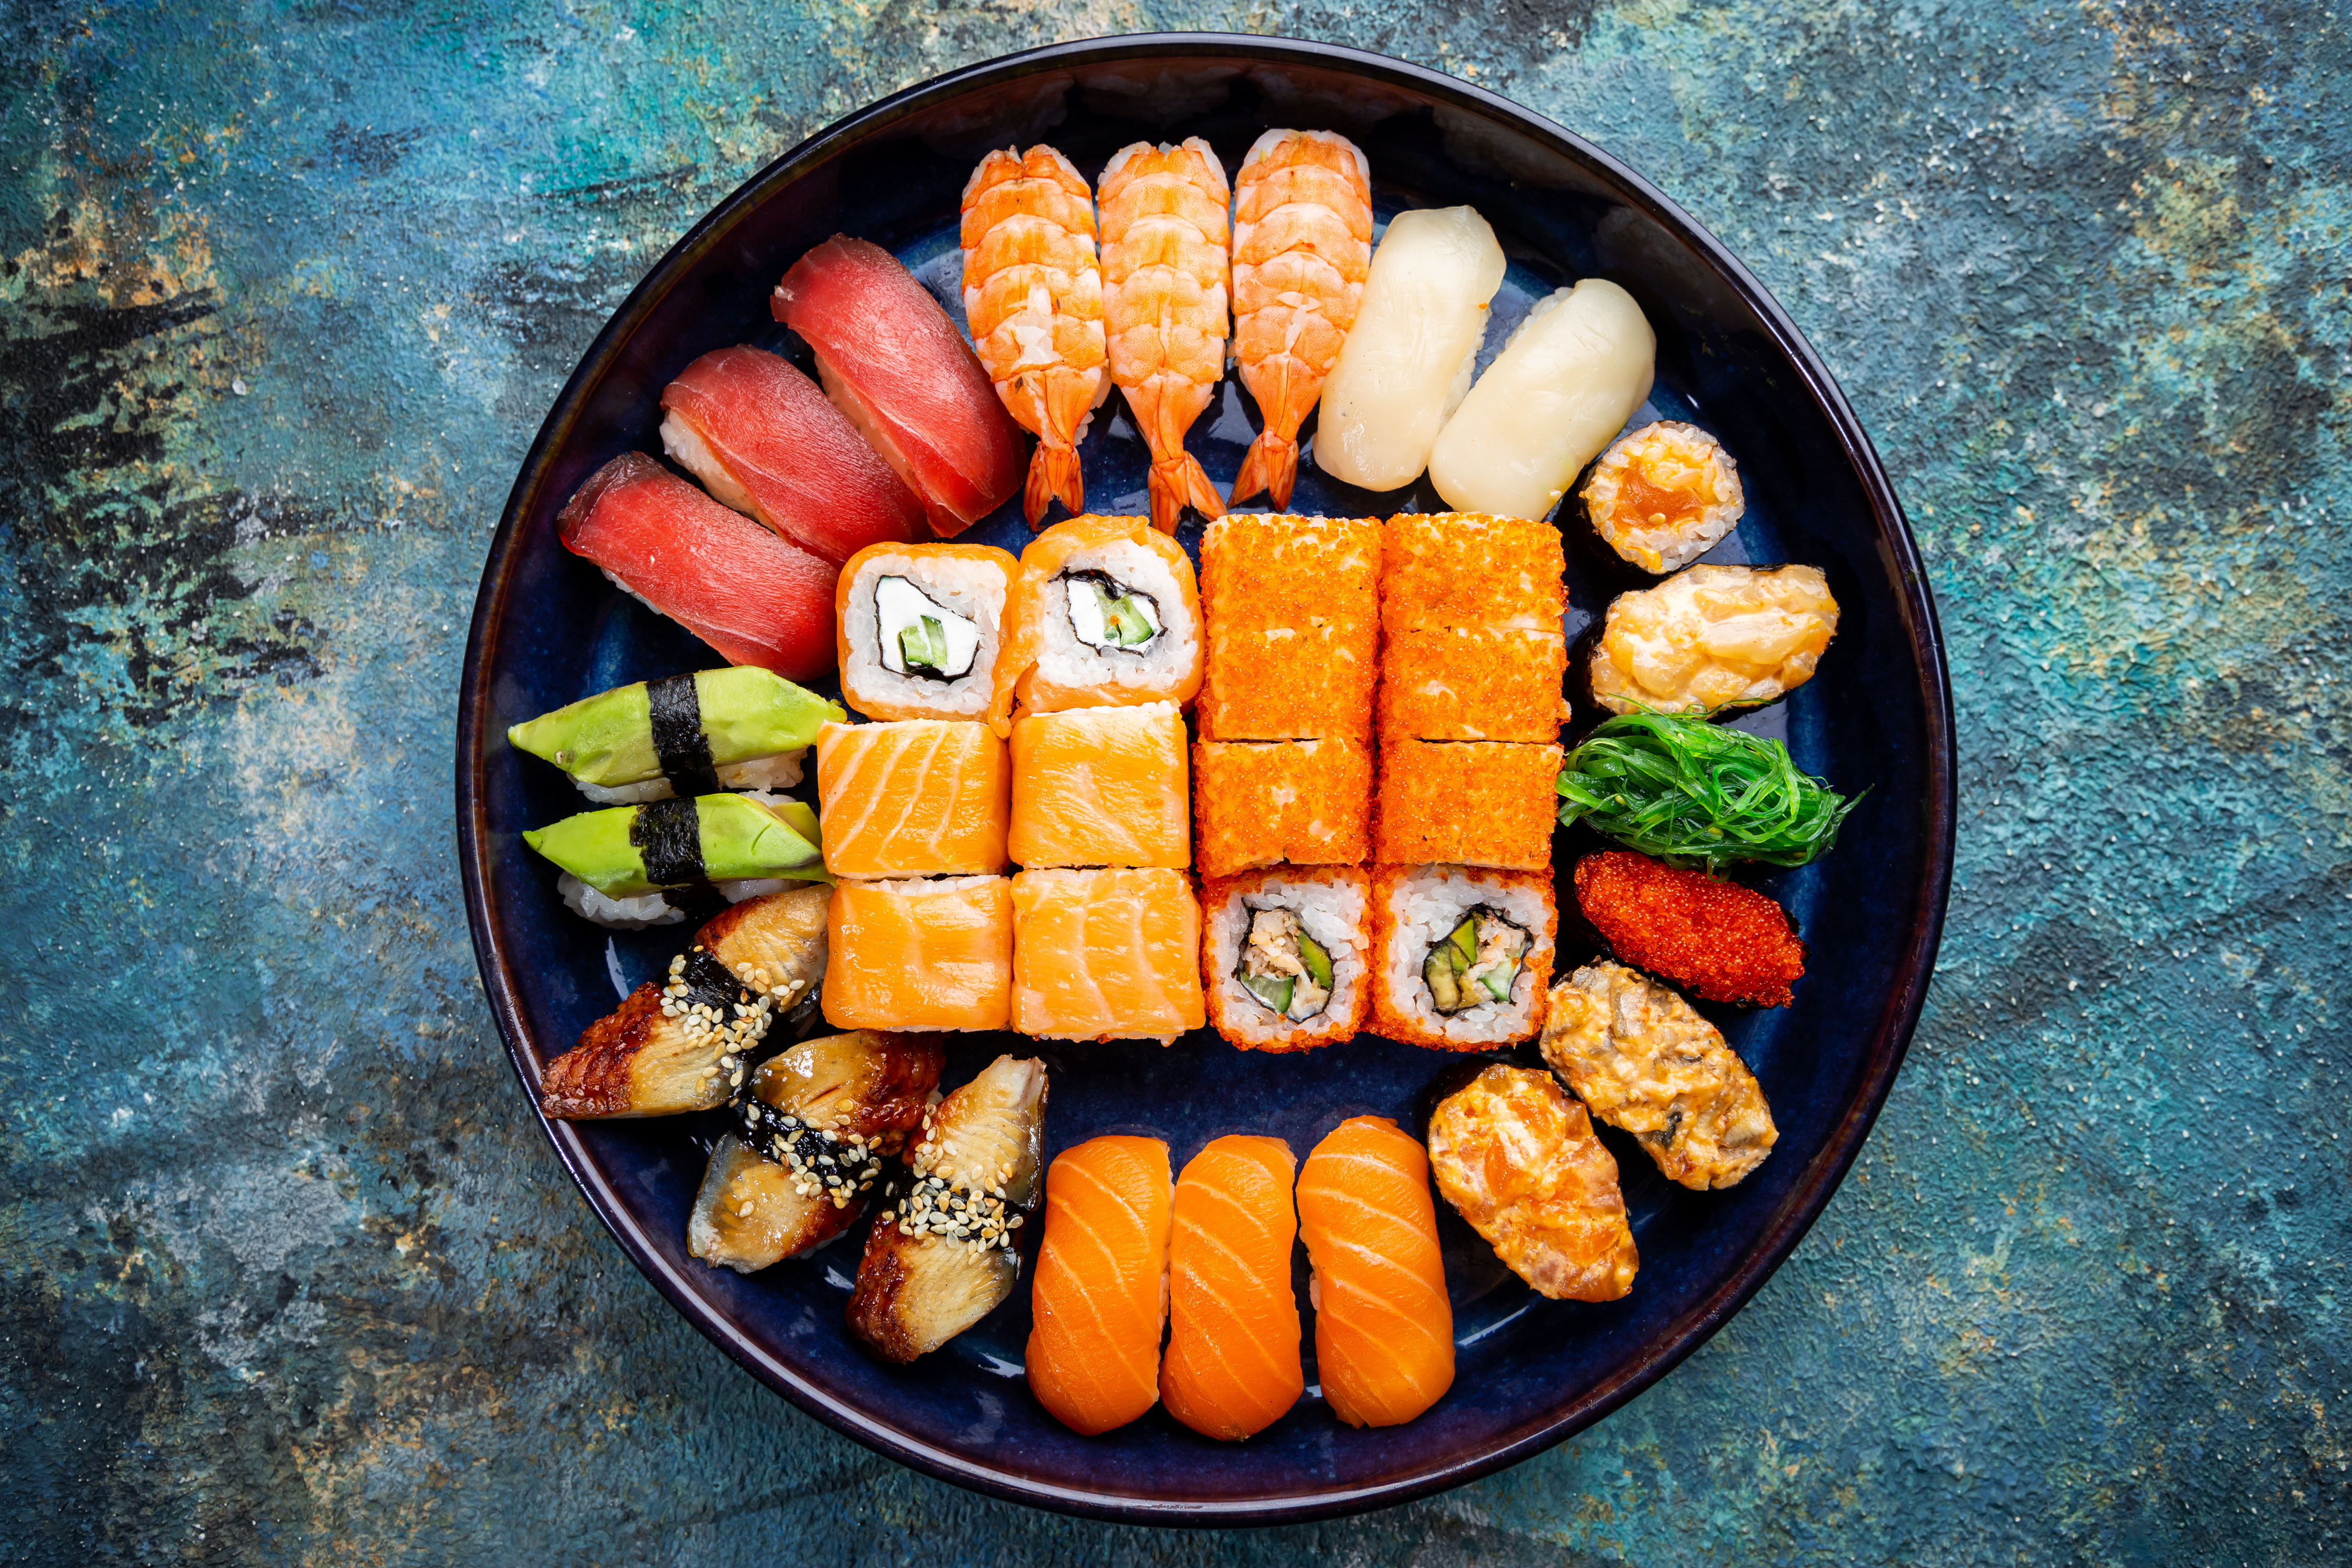 Fruits de mer et crustacés, Huîtres, Poissons grillés, Sushi, sashimi et maki